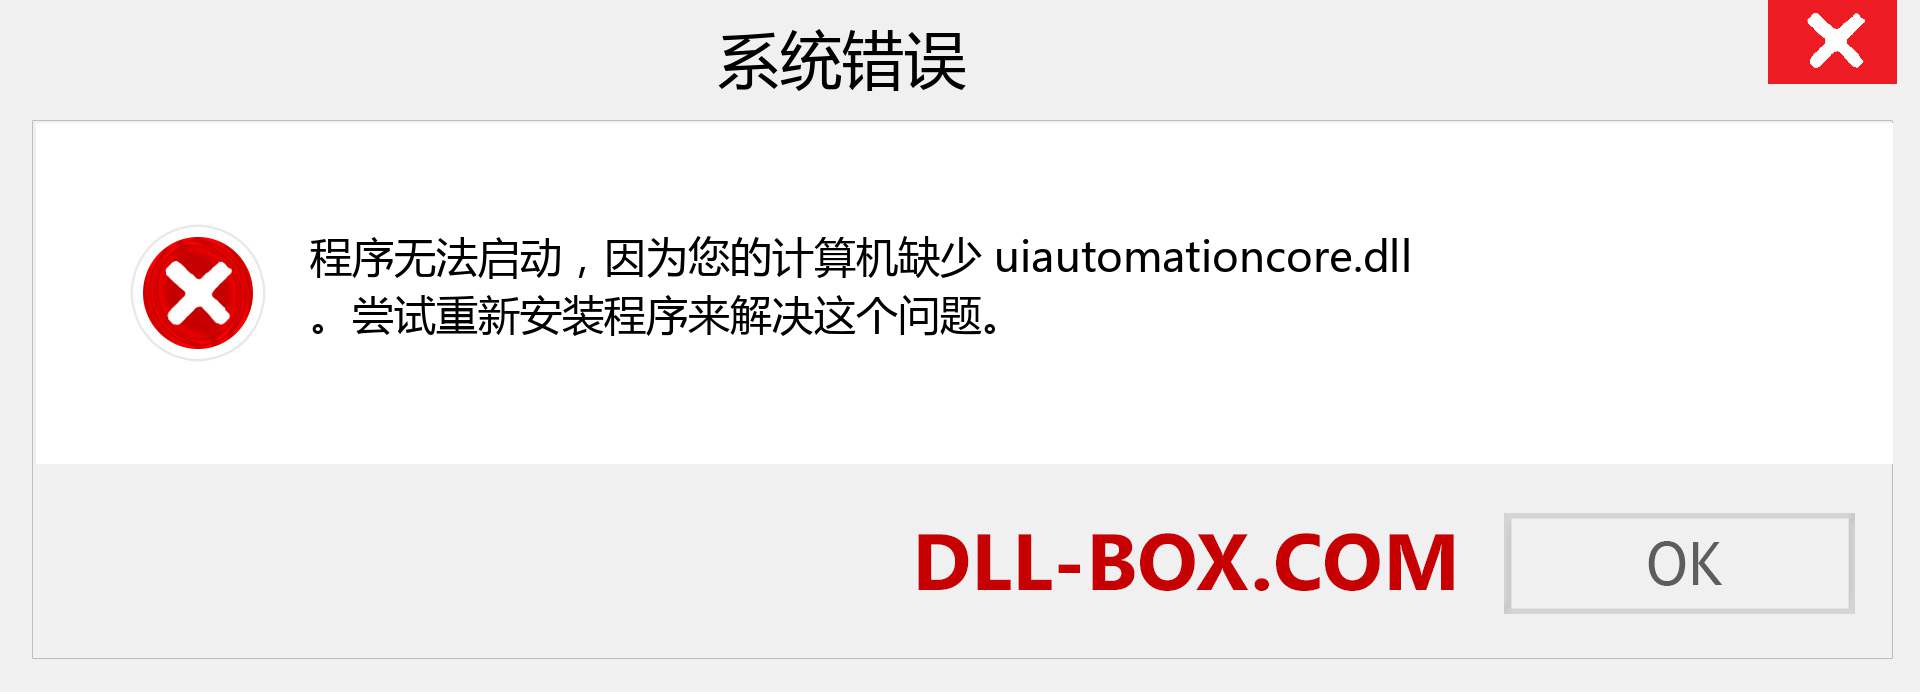 uiautomationcore.dll 文件丢失？。 适用于 Windows 7、8、10 的下载 - 修复 Windows、照片、图像上的 uiautomationcore dll 丢失错误